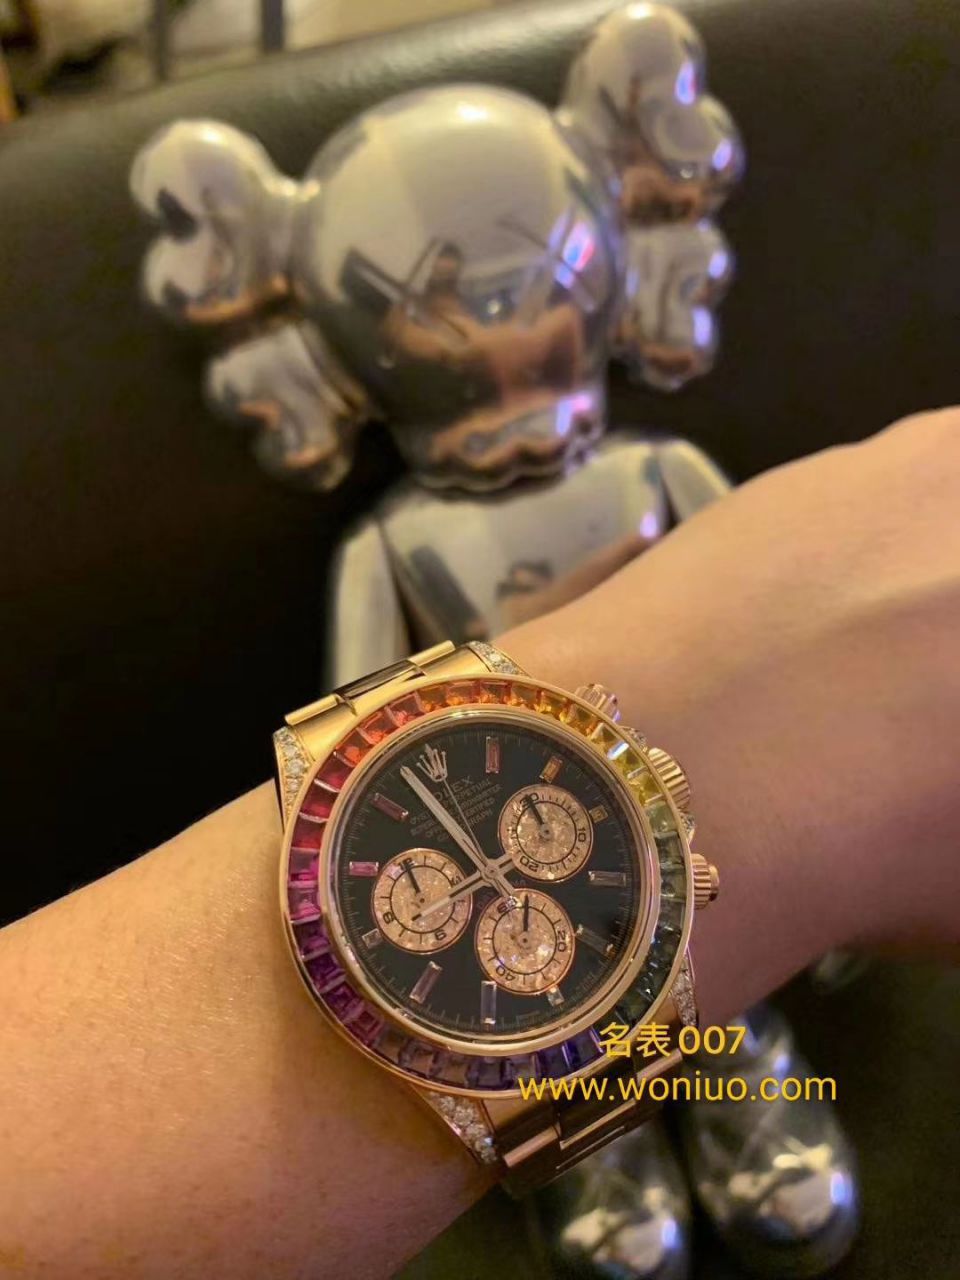 独家后加工真钻包金ROLEX彩虹迪劳力士宇宙计型迪通拿系列116595 RBOW腕表 